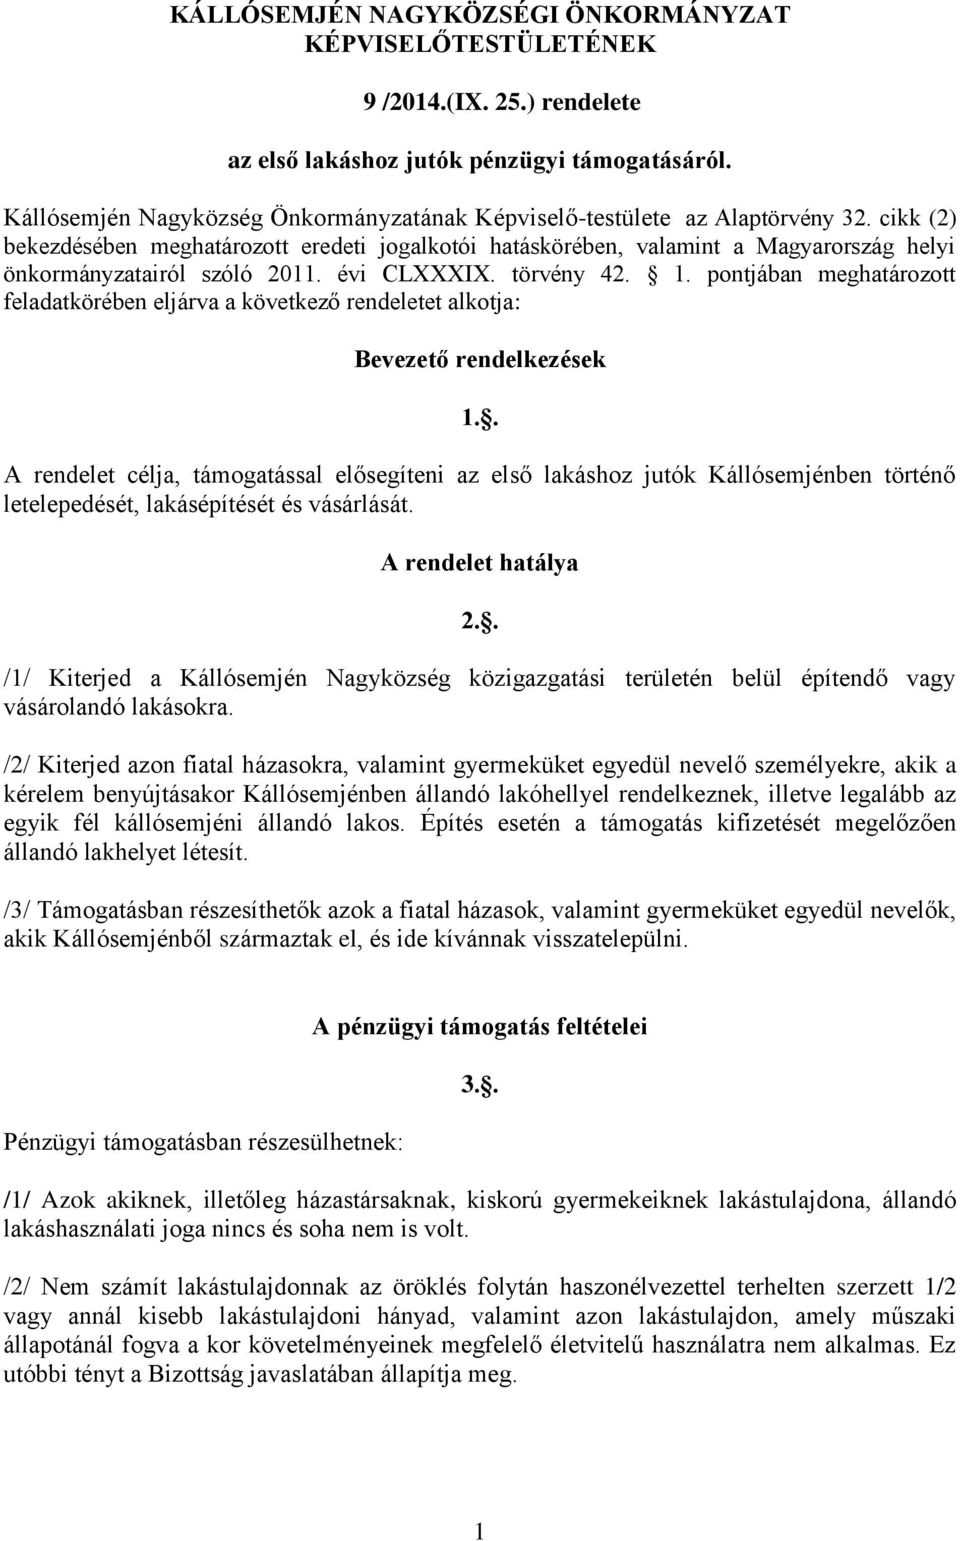 cikk (2) bekezdésében meghatározott eredeti jogalkotói hatáskörében, valamint a Magyarország helyi önkormányzatairól szóló 2011. évi CLXXXIX. törvény 42. 1.